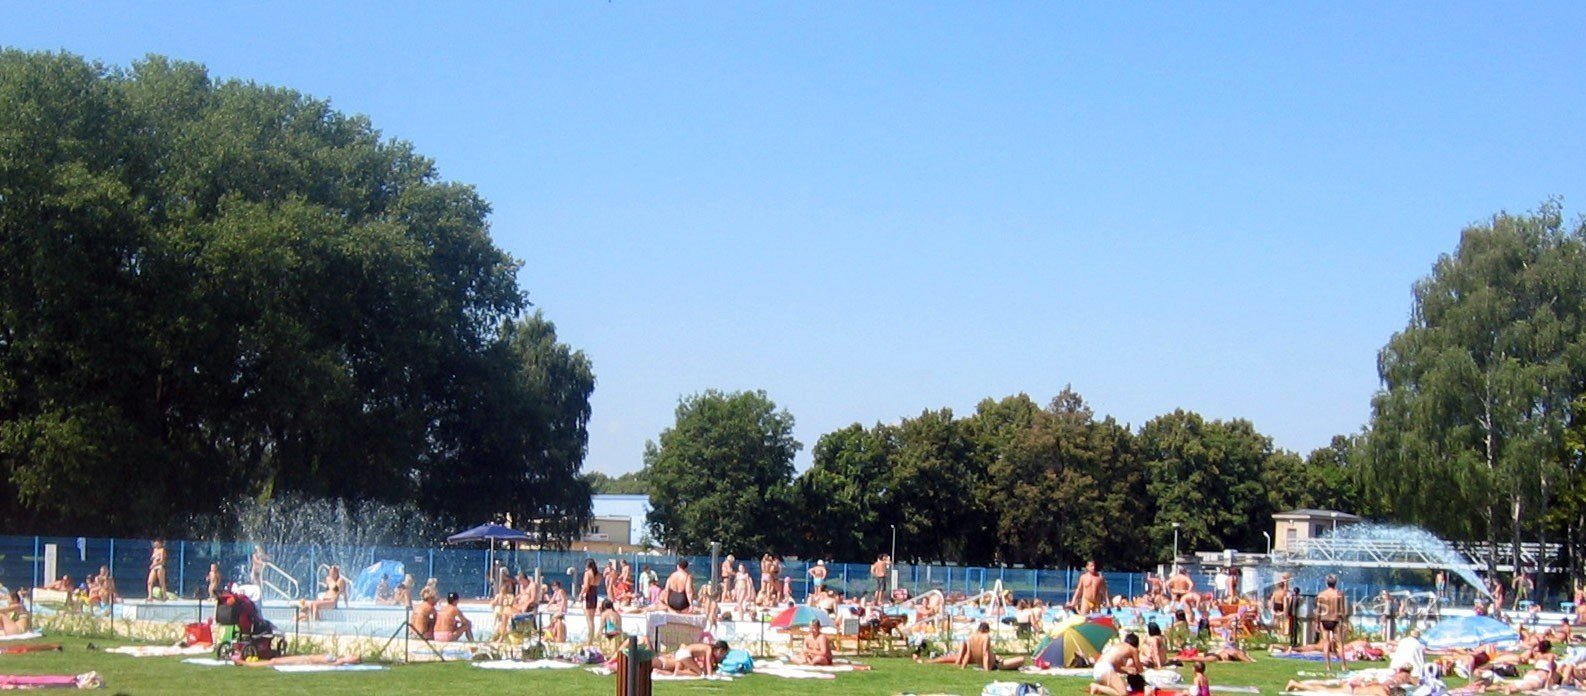 České Budějovice - Summer swimming pool